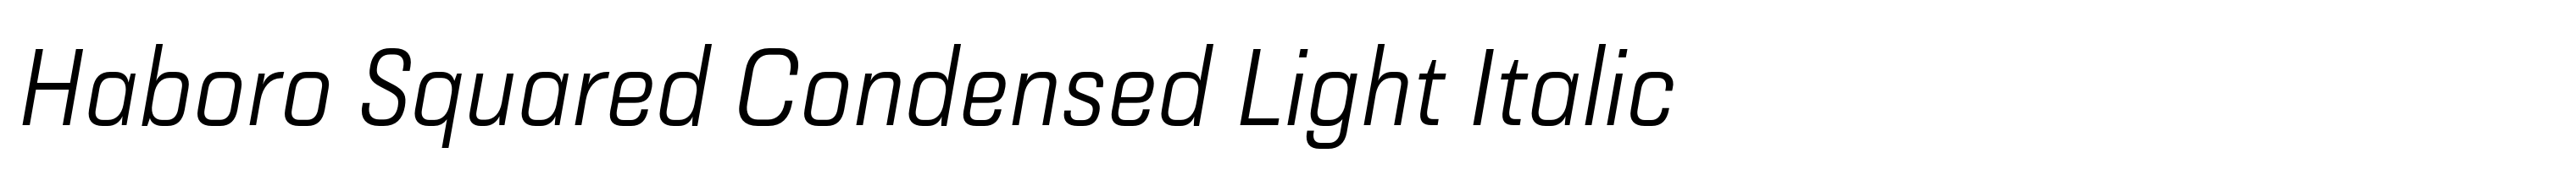 Haboro Squared Condensed Light Italic